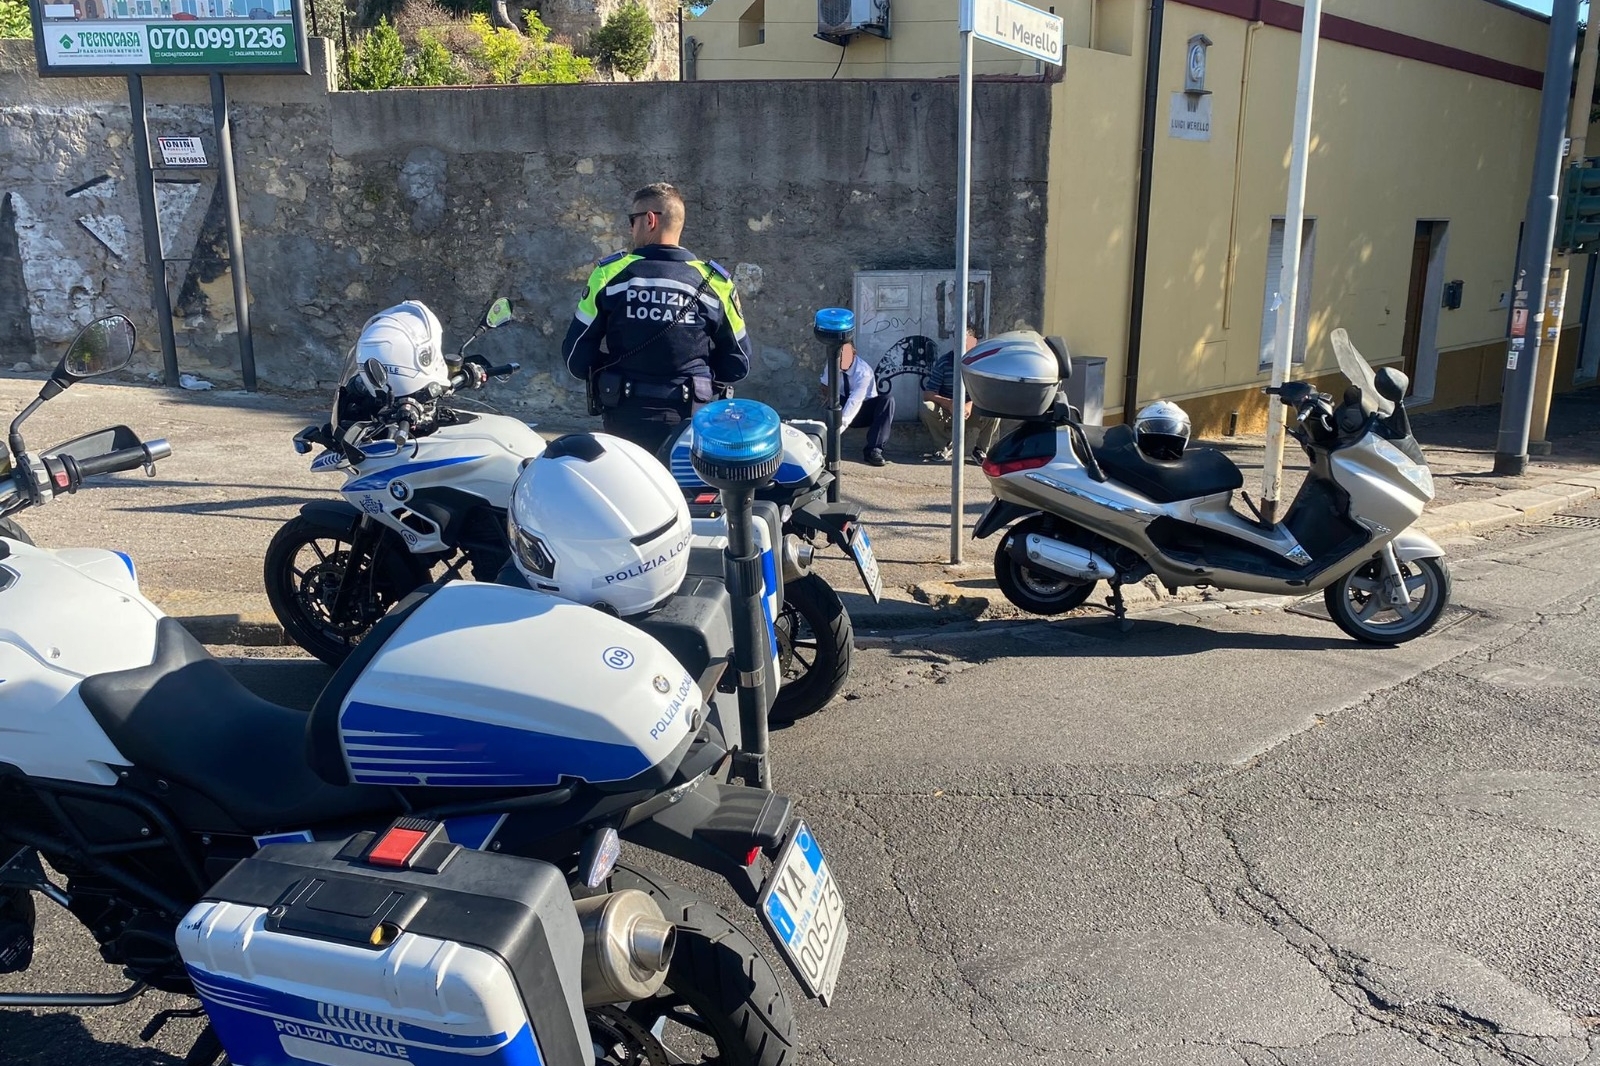 Cagliari: senza patente e assicurazione, brucia l’alt dei vigili e poi cade con la moto